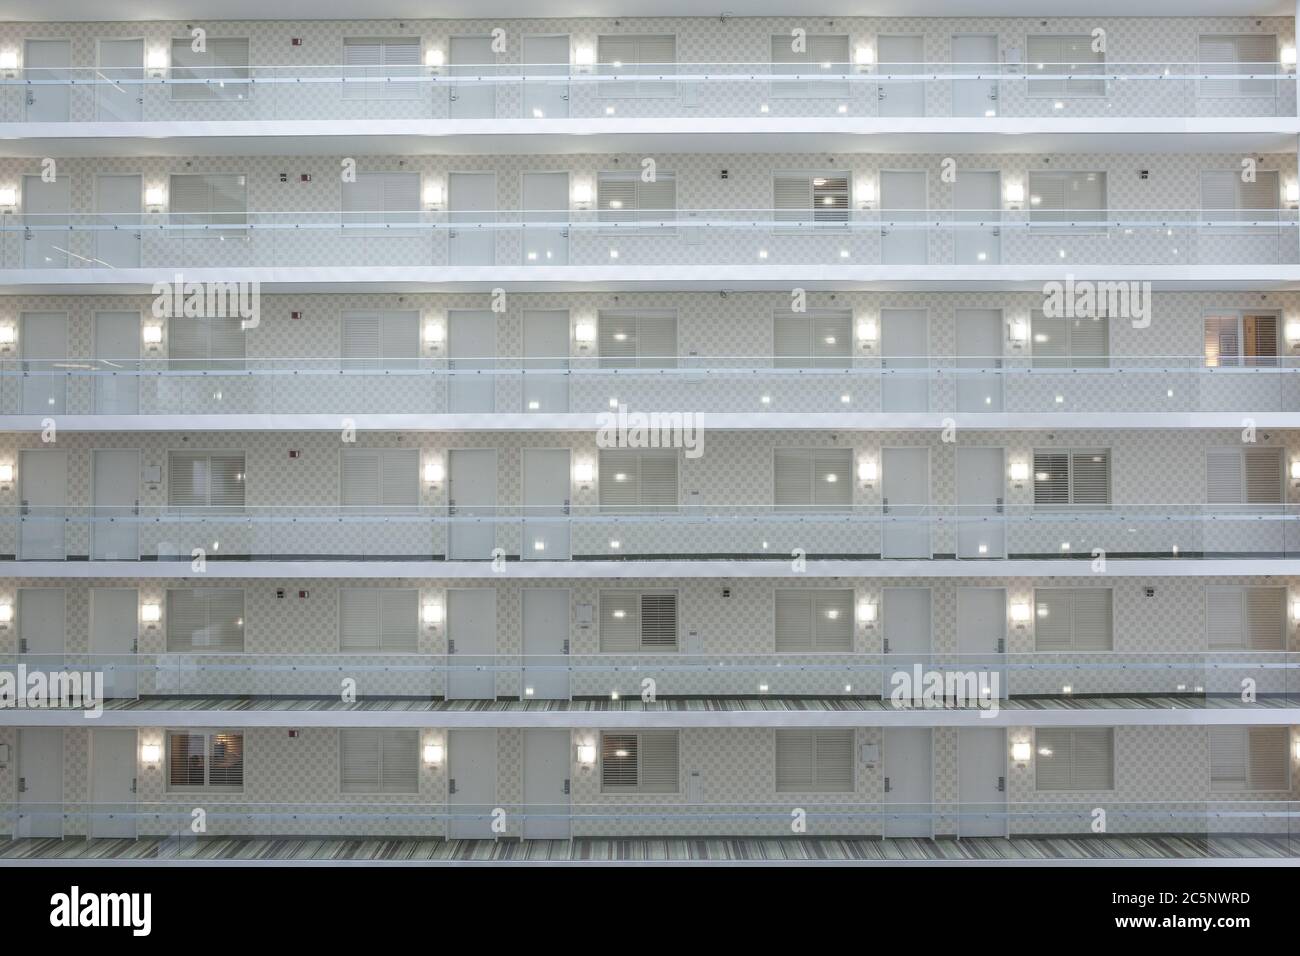 Ein Blick auf identische Etagen in einem Chicago Hotel Stockfoto